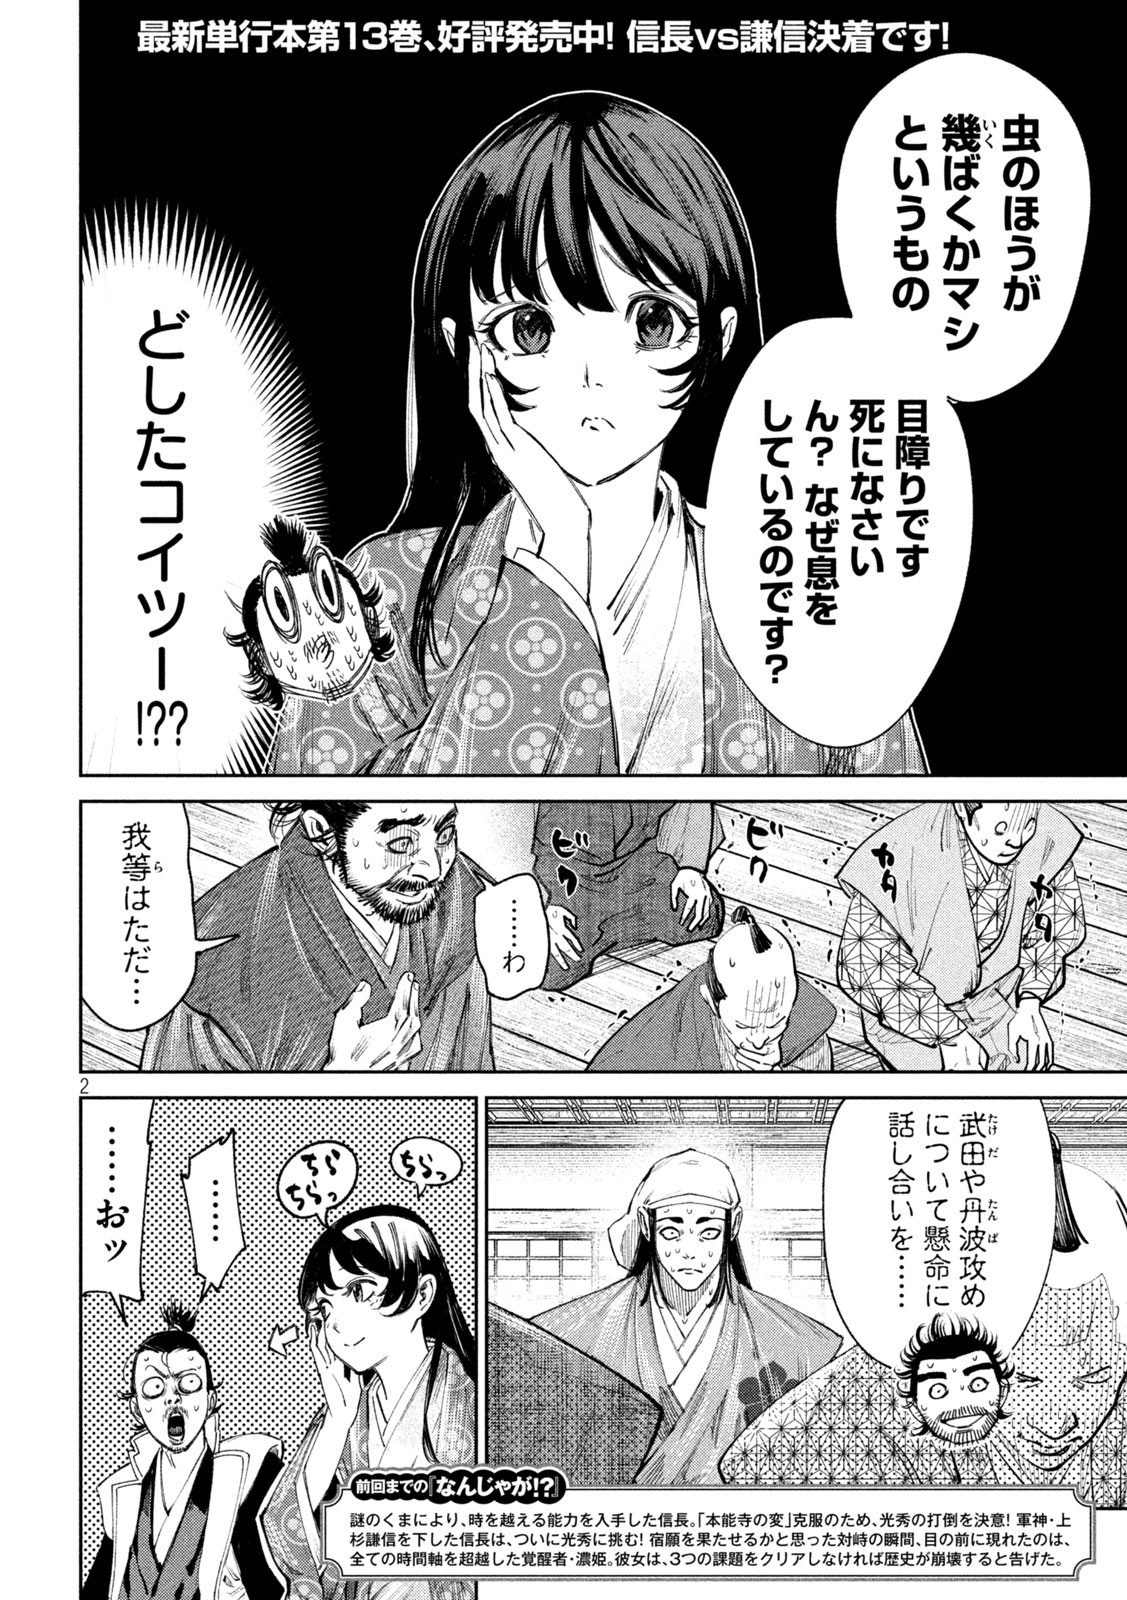 Nando toki o kurikaeshitemo Honnouji ga moerunjaga! - Chapter 122 - Page 2